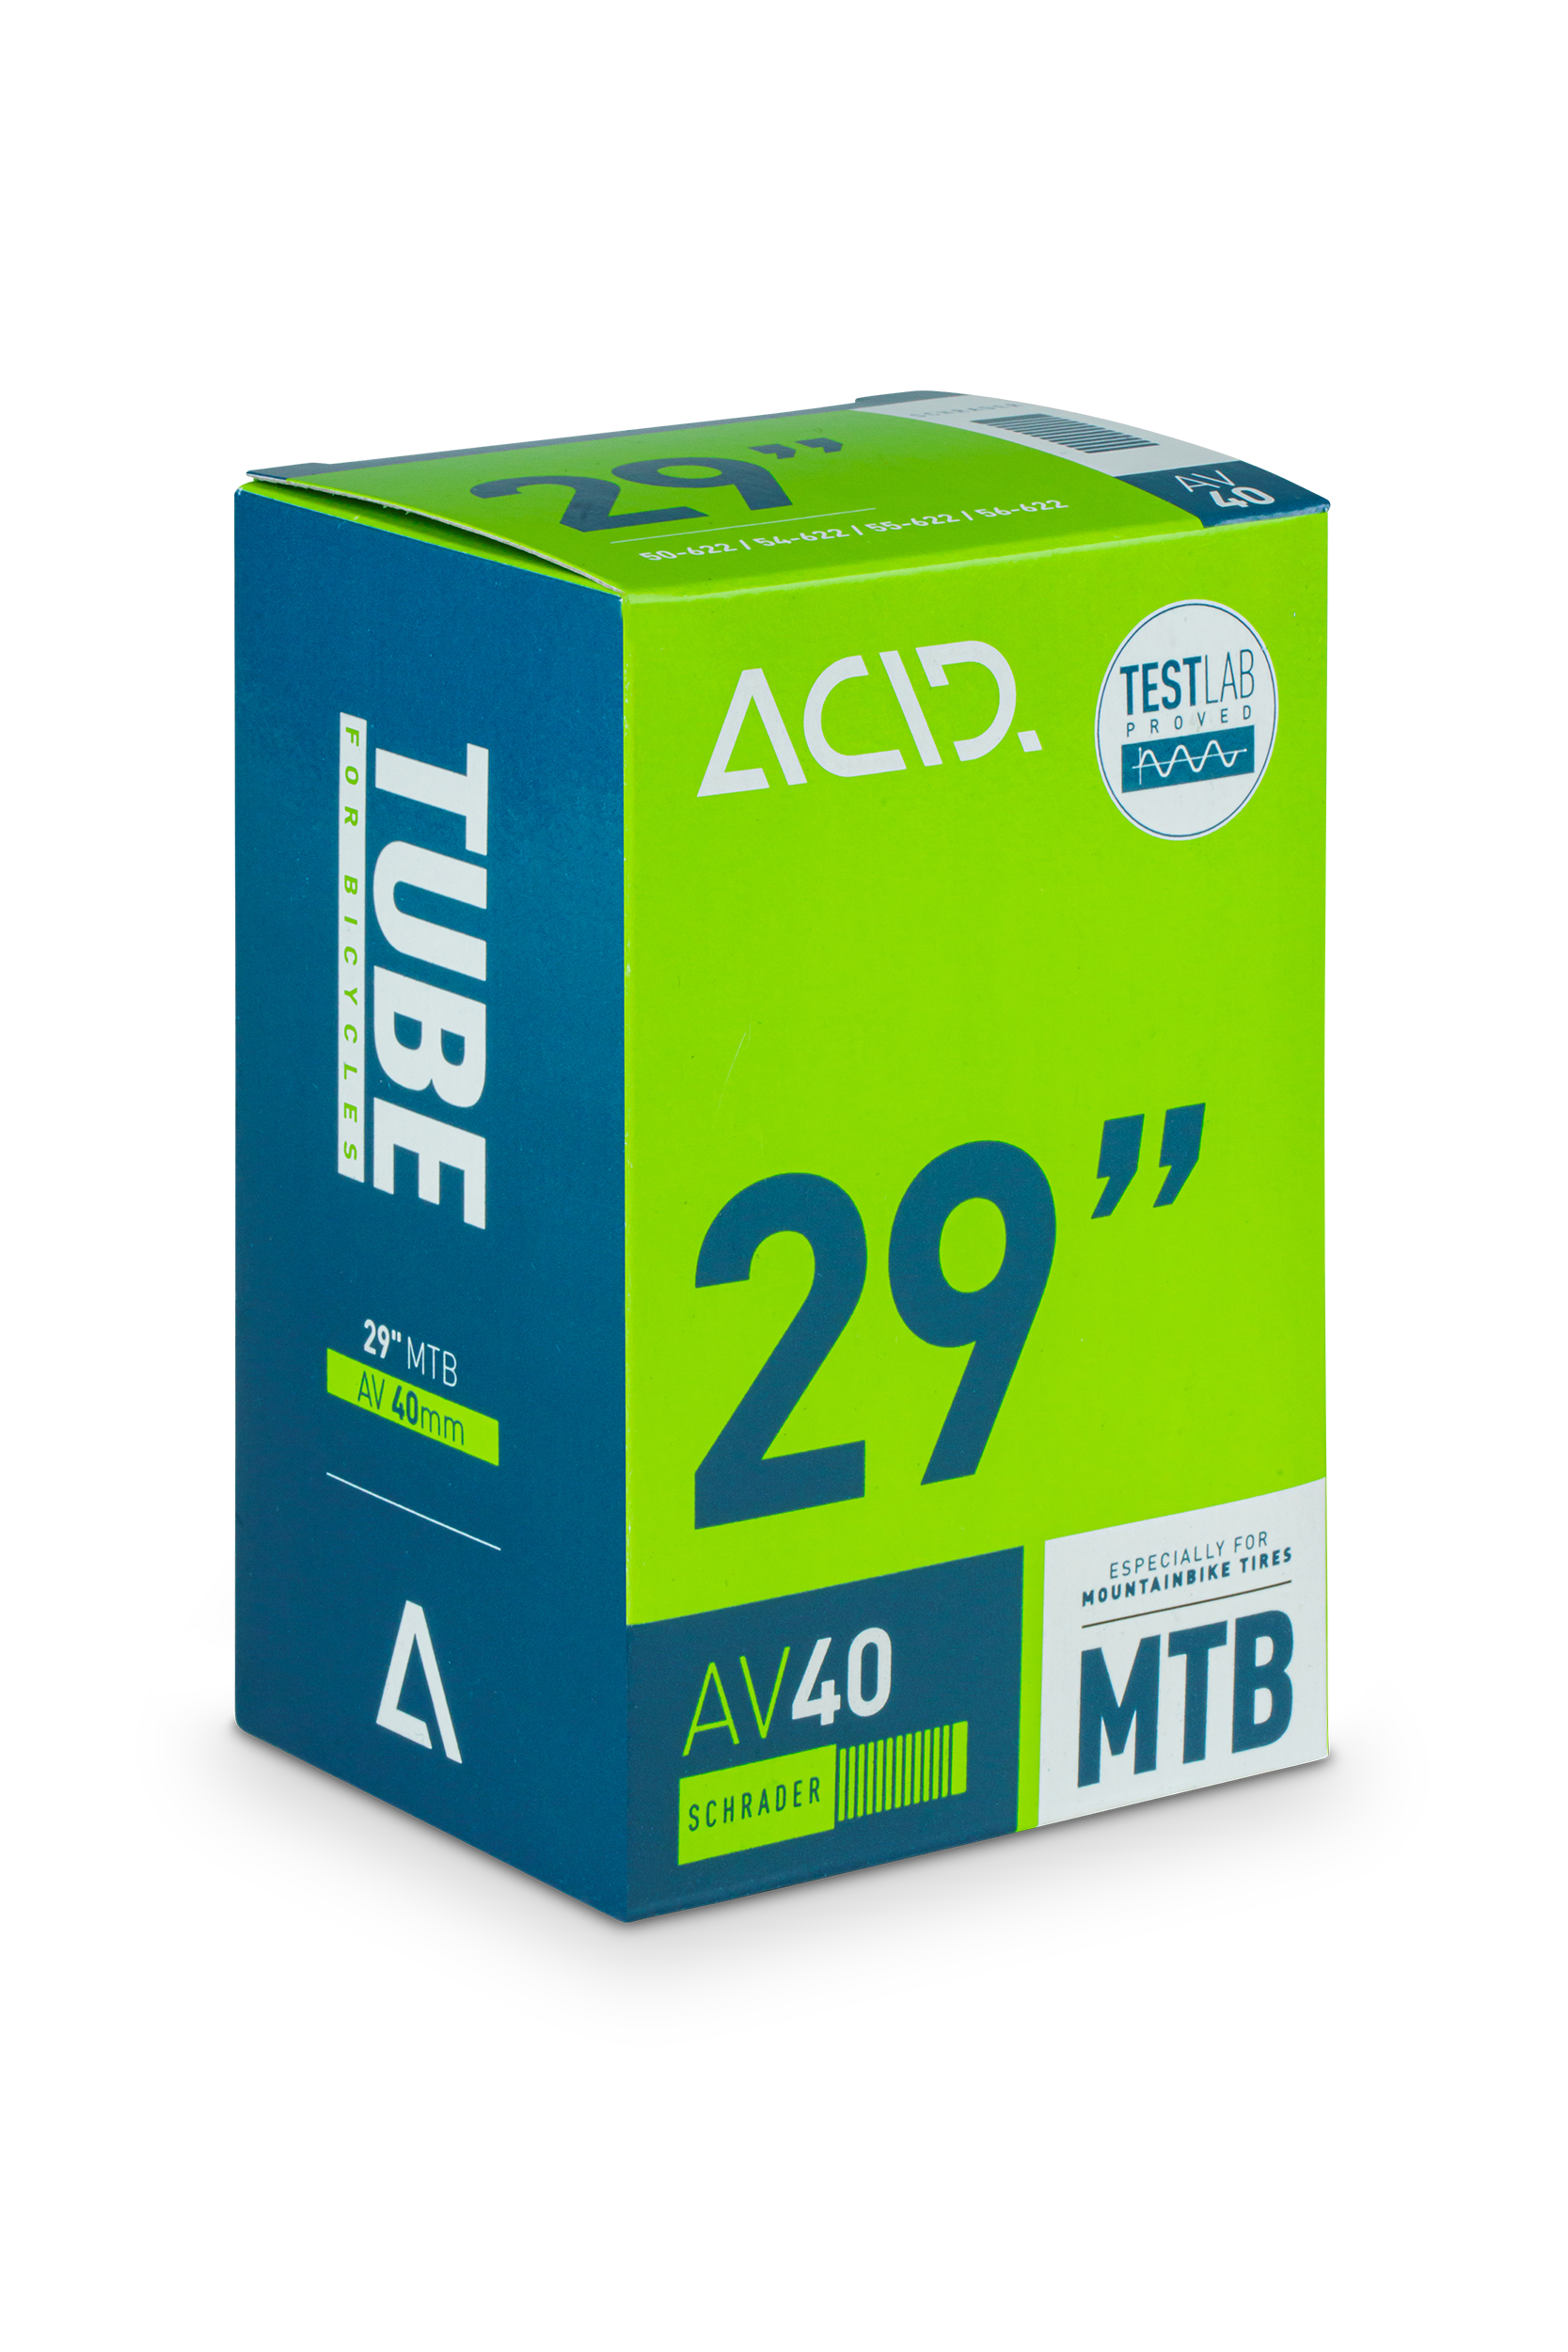 ACID Tube 29" MTB AGV 40mm